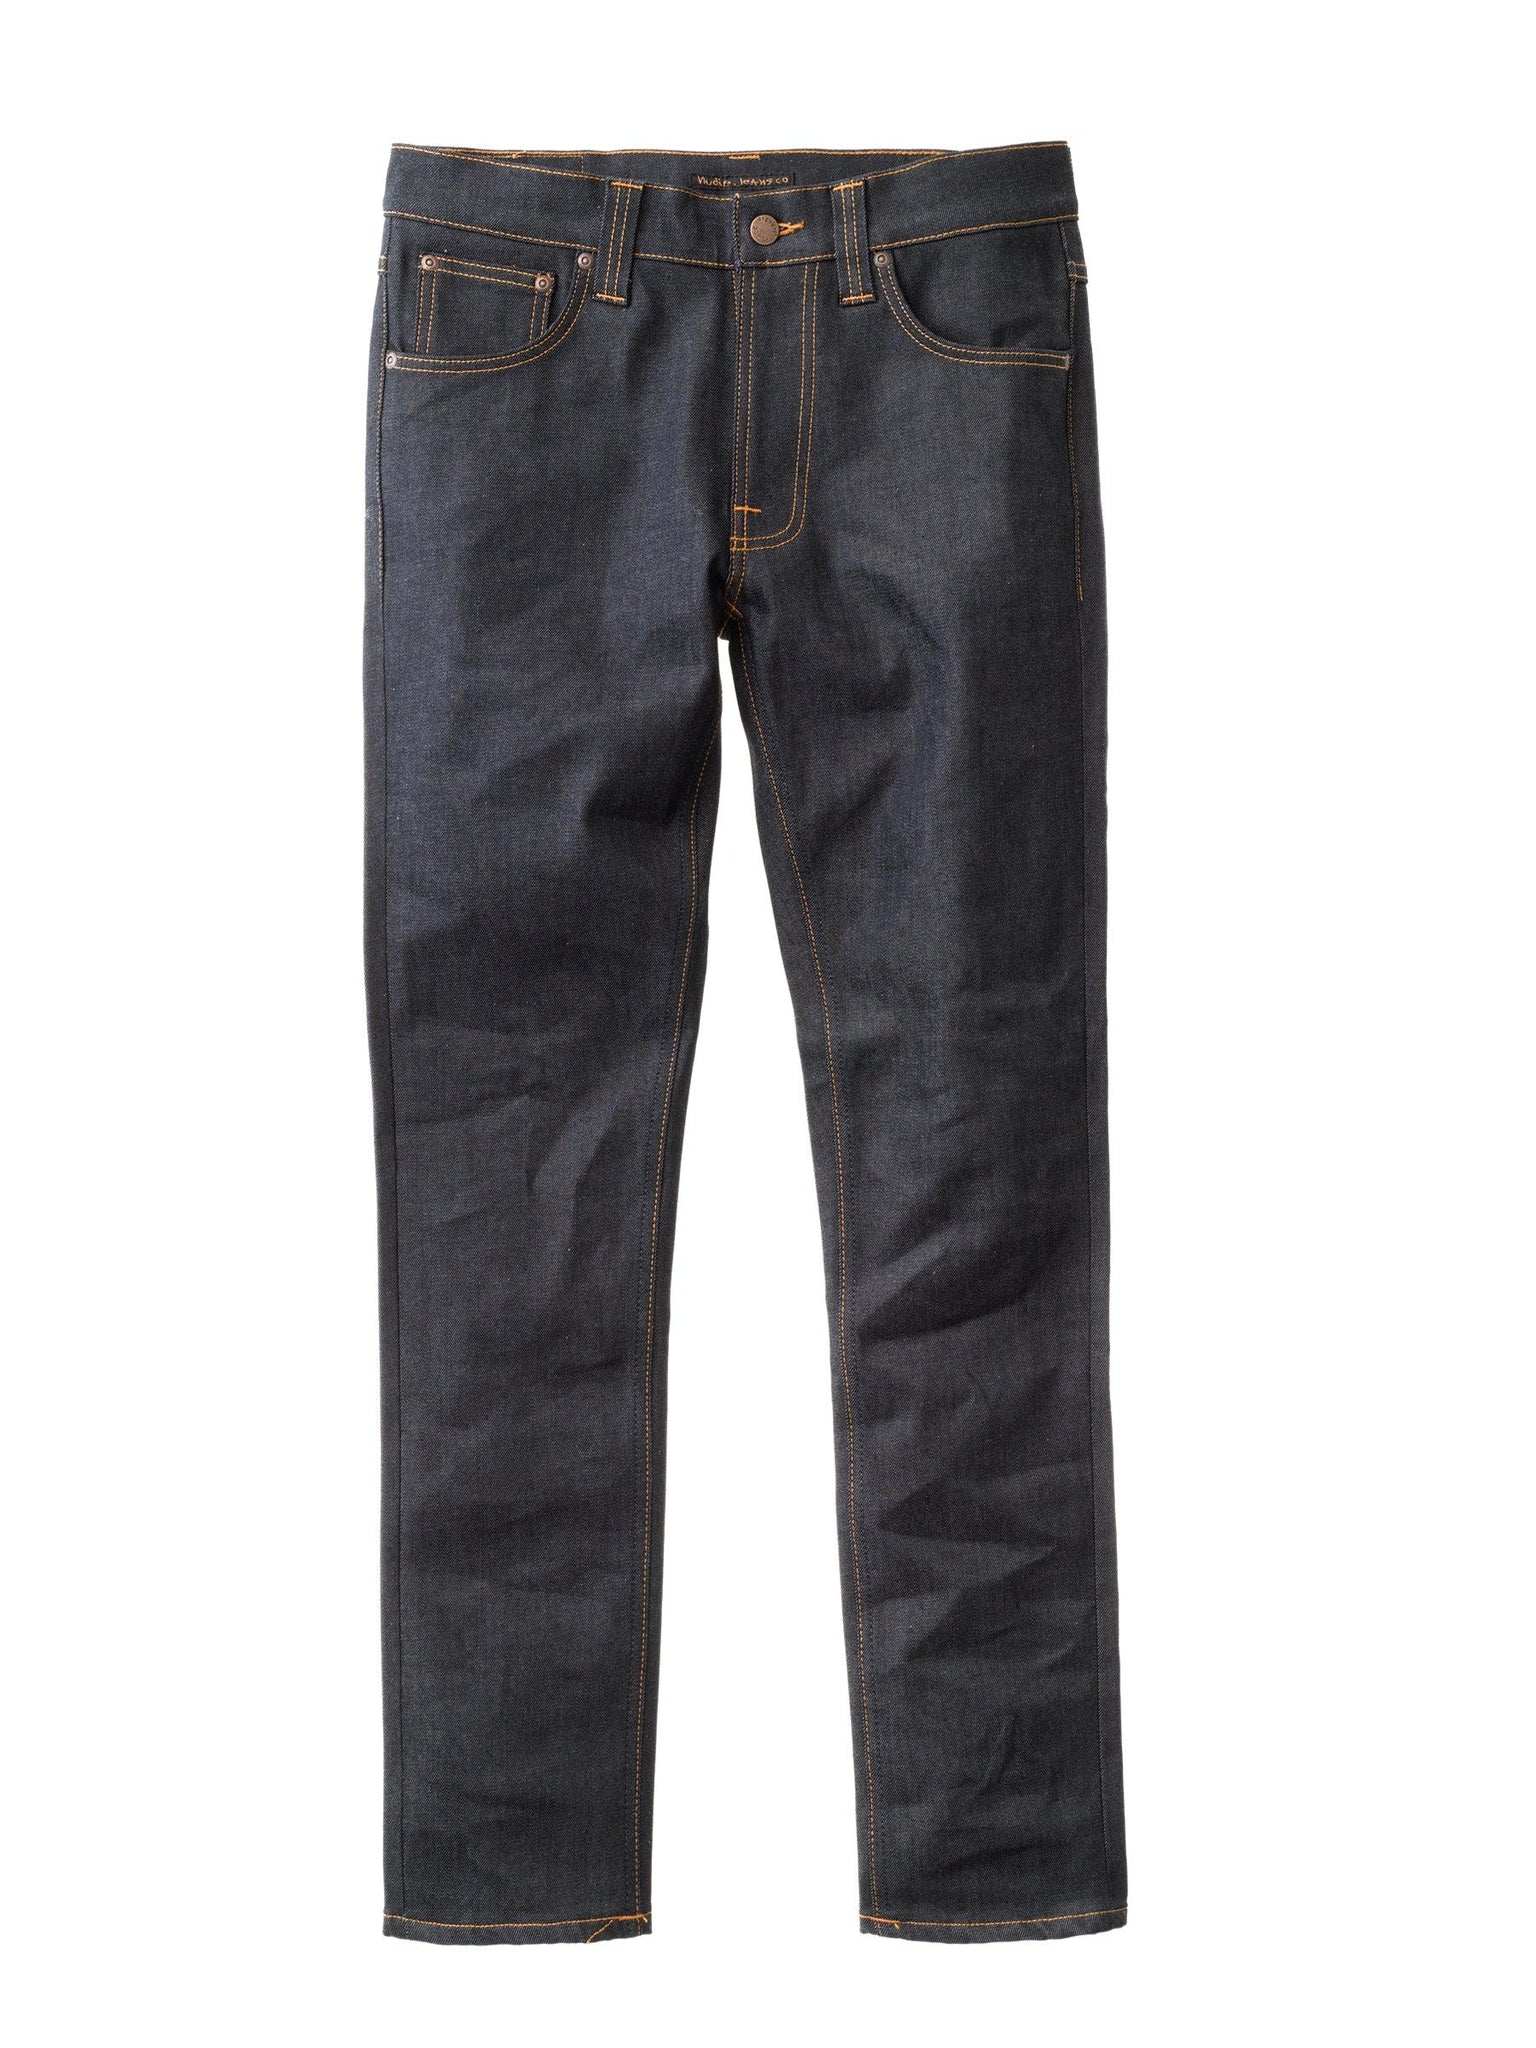 LEAN DEAN Dry 16 Dips - INHABIT - Exclusive Stockist of Nudie Jeans